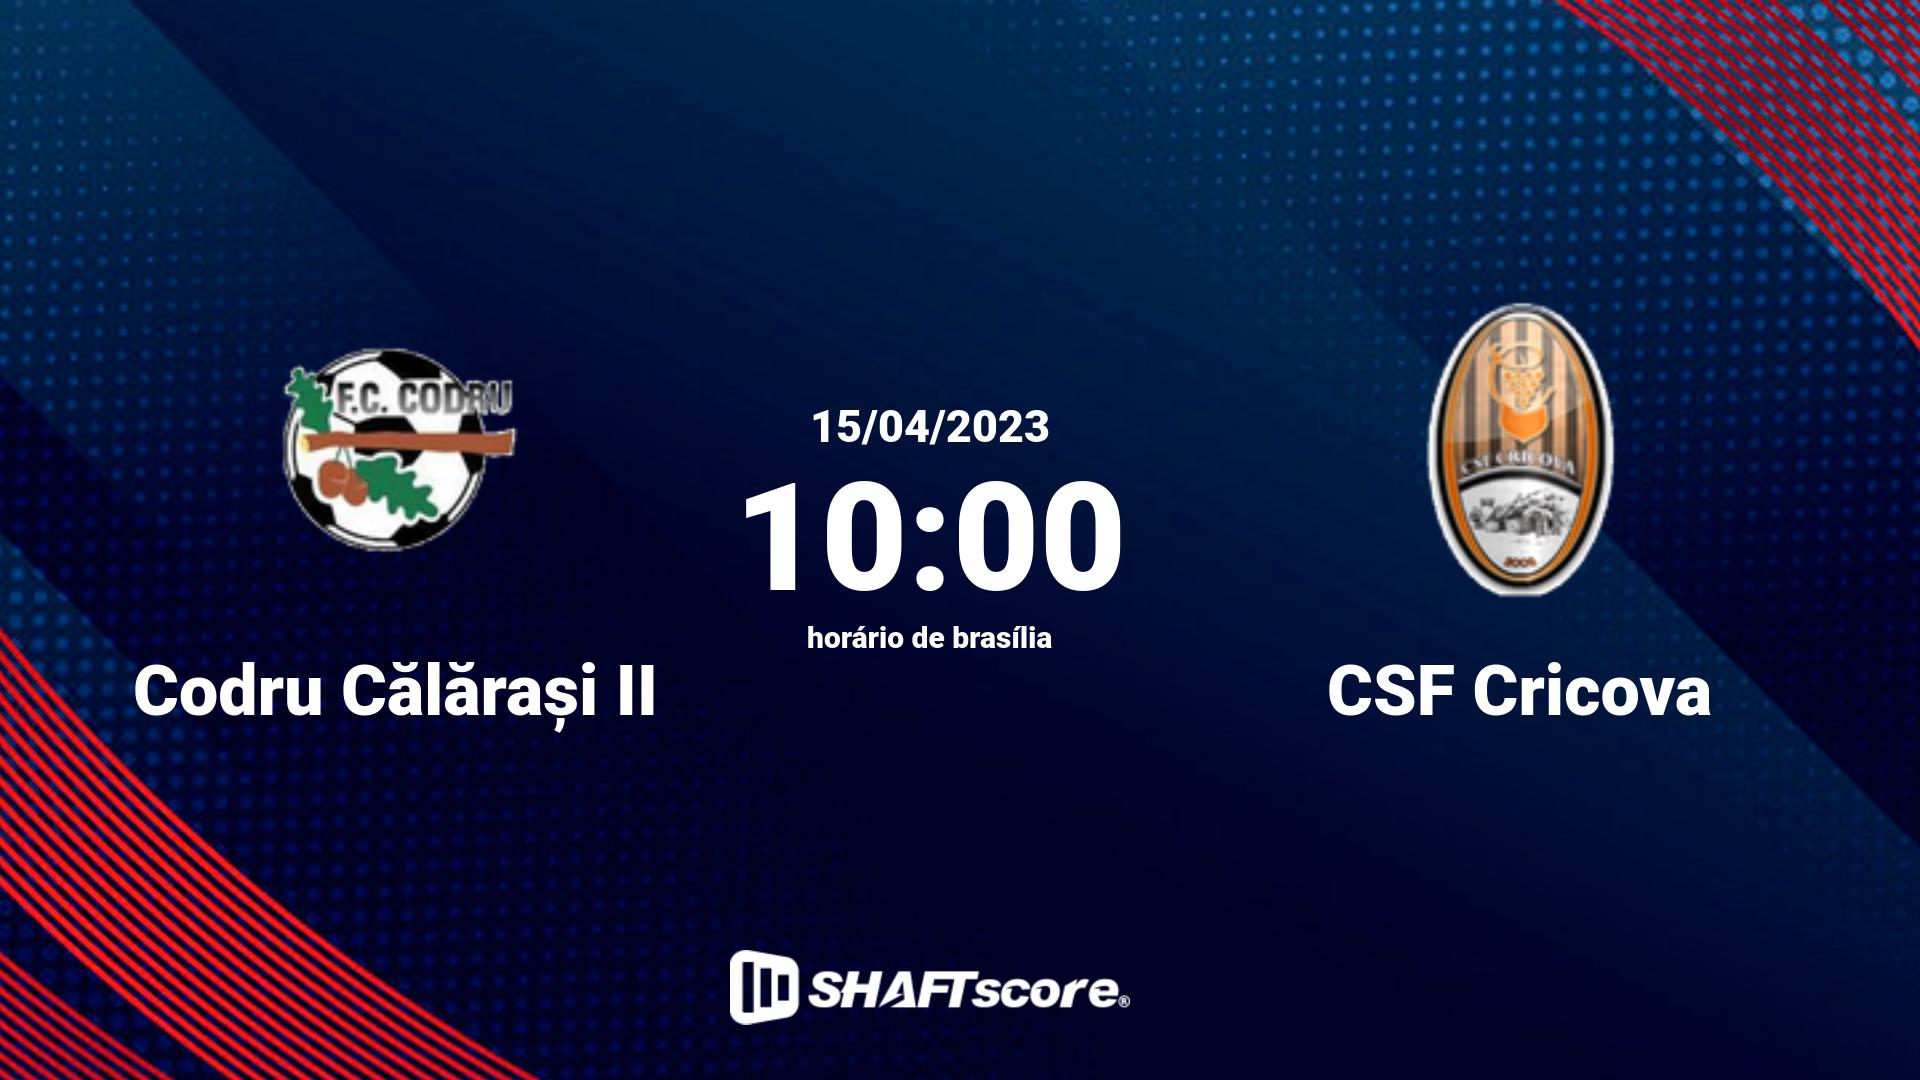 Estatísticas do jogo Codru Călărași II vs CSF Cricova 15.04 10:00